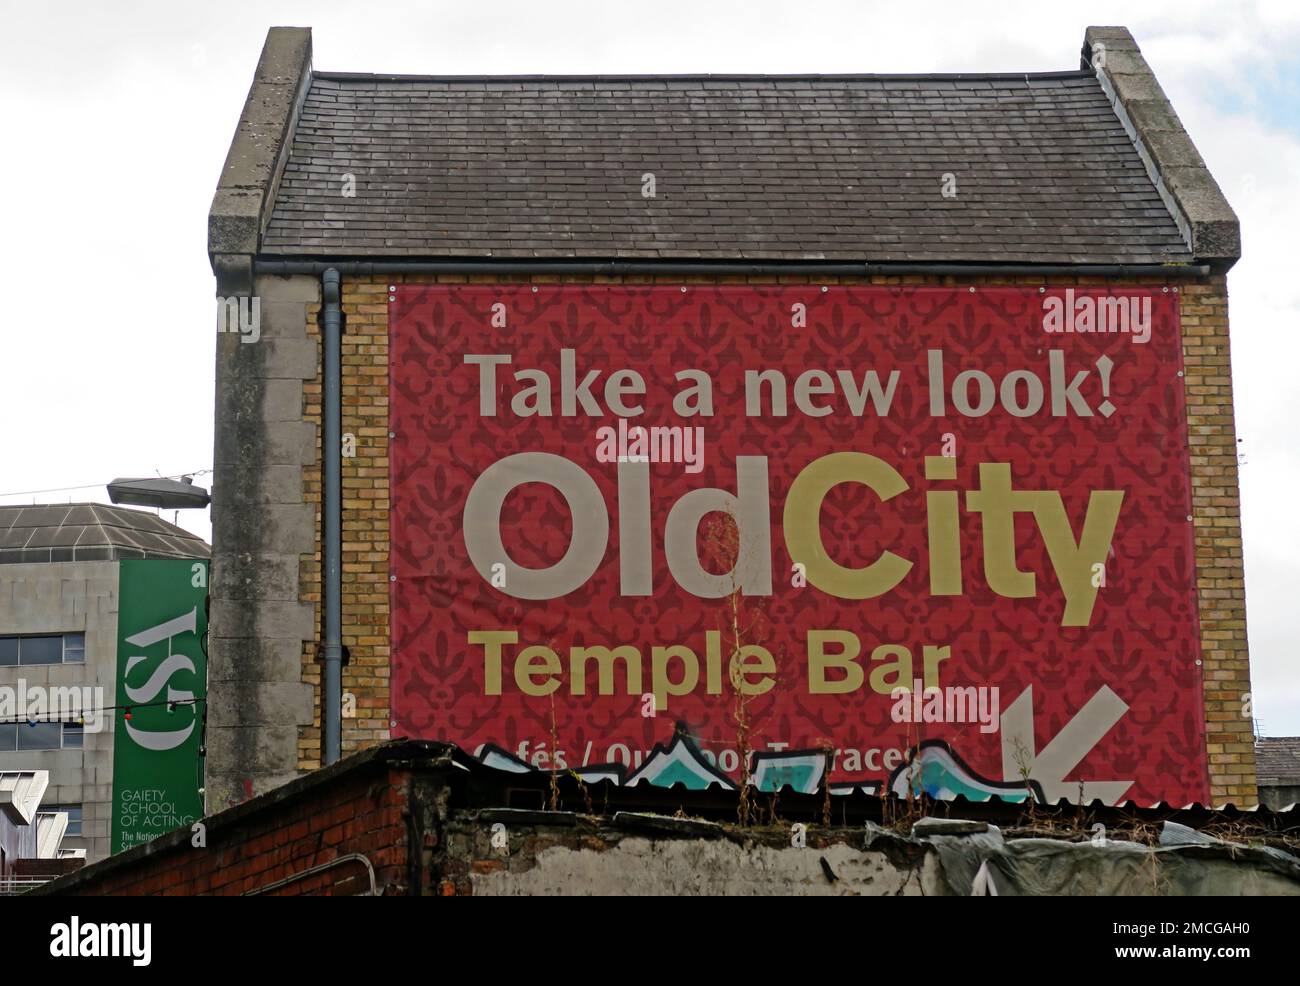 Découvrez Old City, Essex St West, Temple Bar, Dublin, Eire, Irlande Banque D'Images